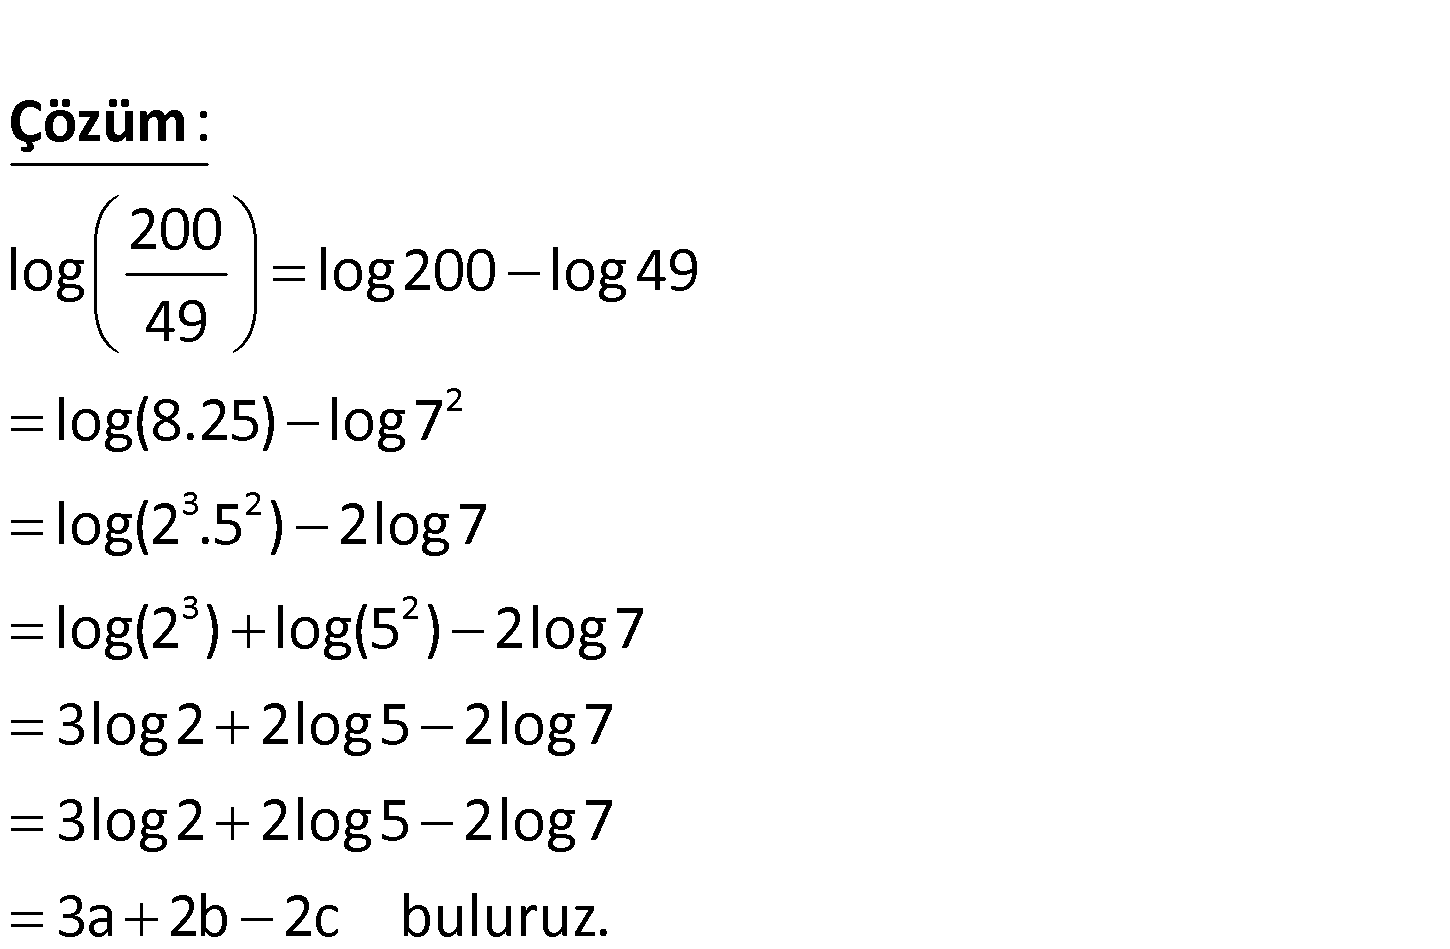 M log 2 5. Log2. Log 40. Log2 + log2. 2log2 5.